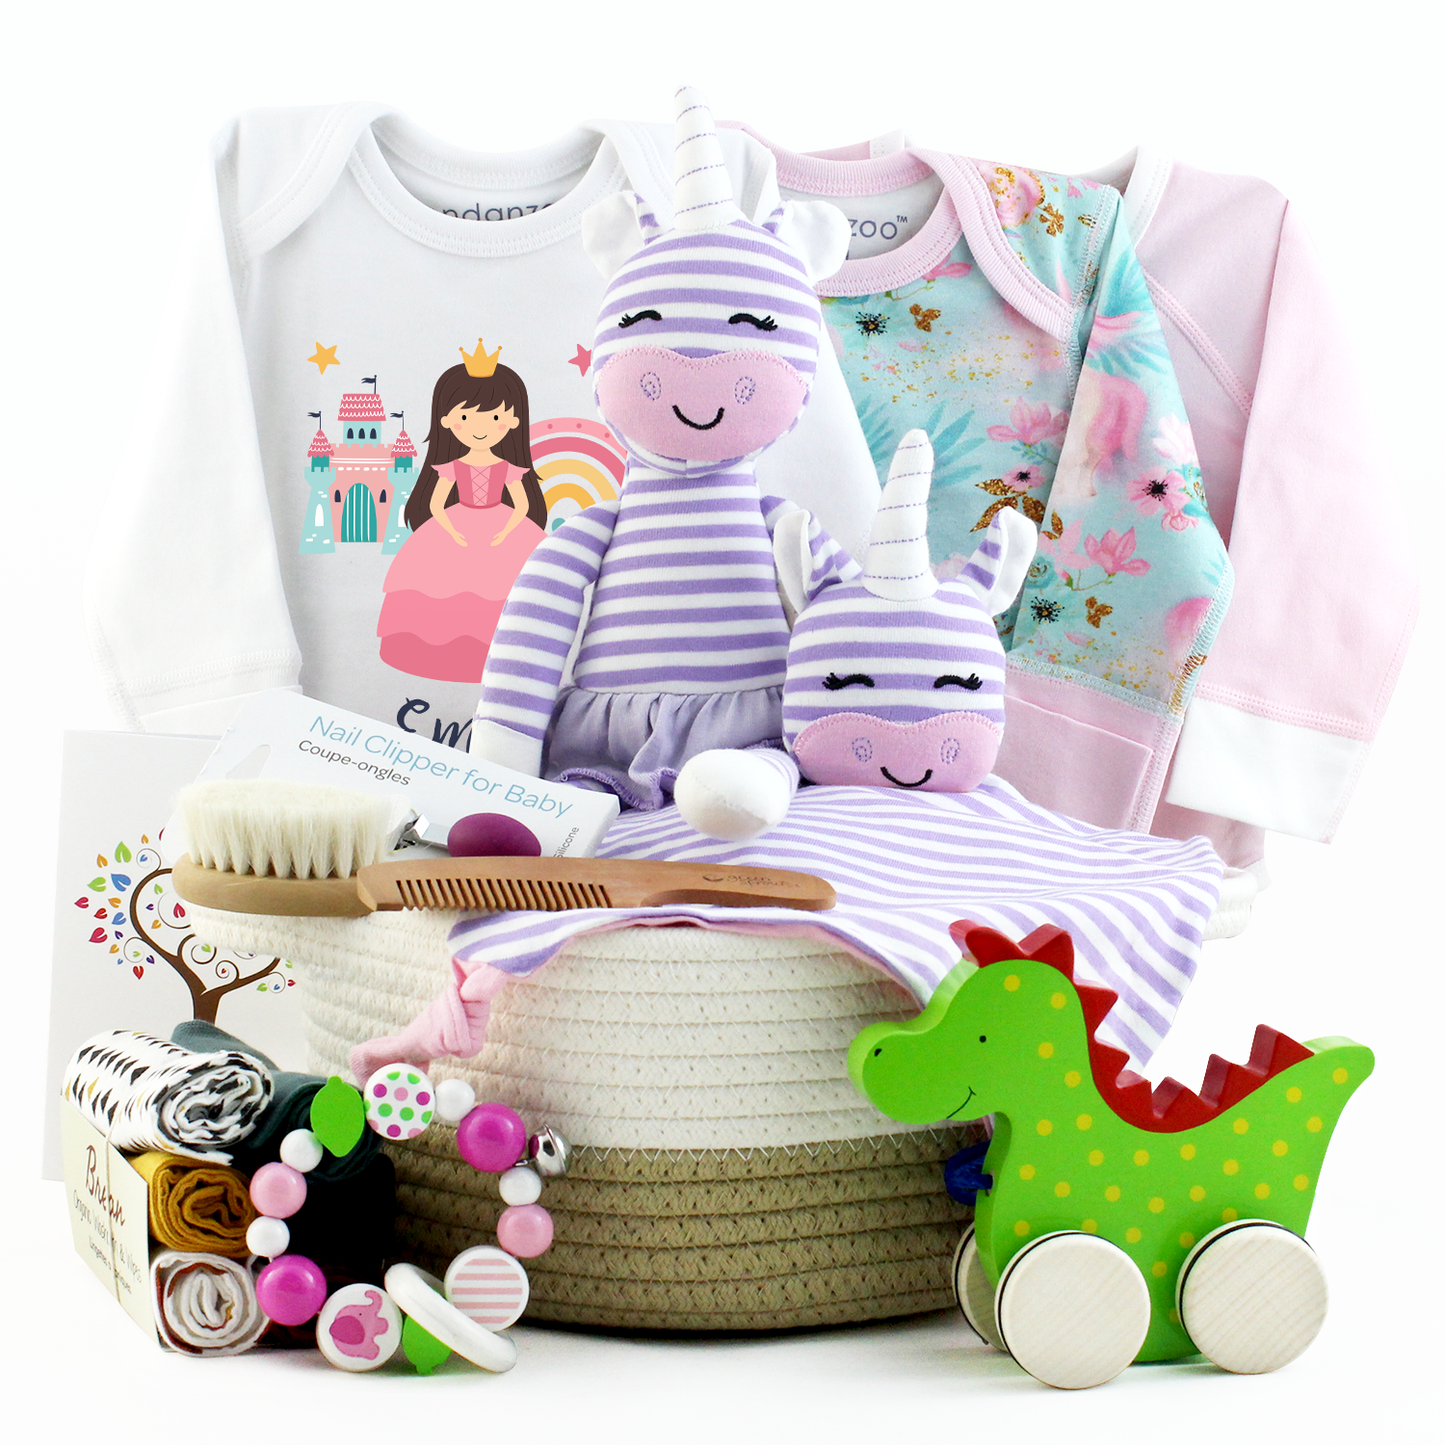 Zeronto Baby Girl Gift Basket - Royal Princess and the Dragon